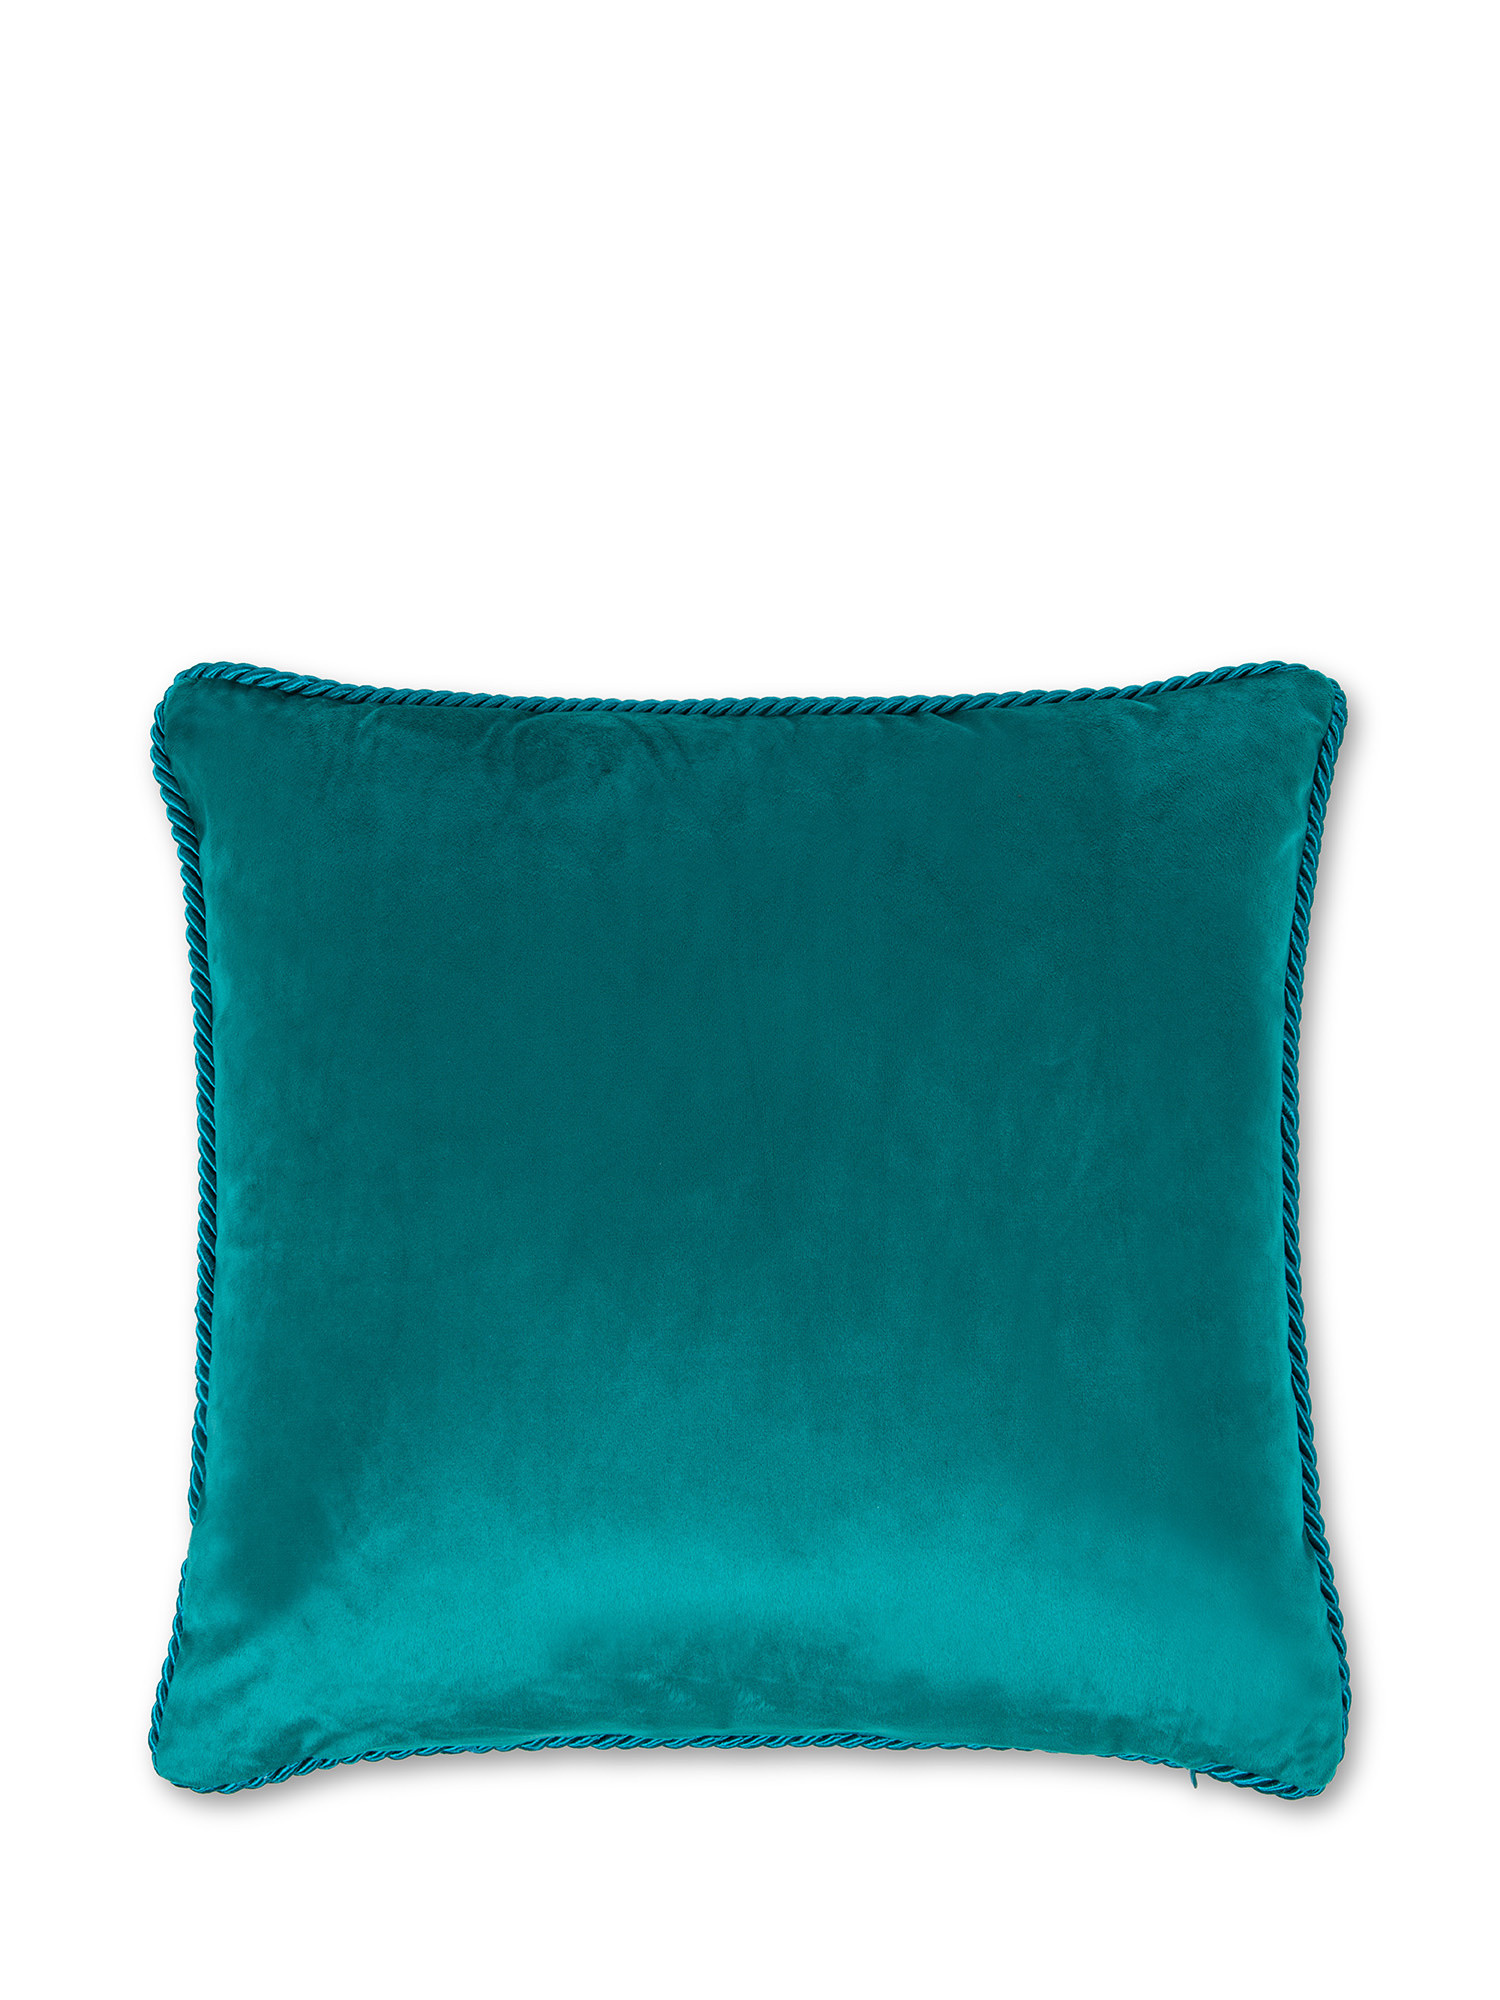 Solid color velvet cushion 45X45cm, Teal, large image number 1